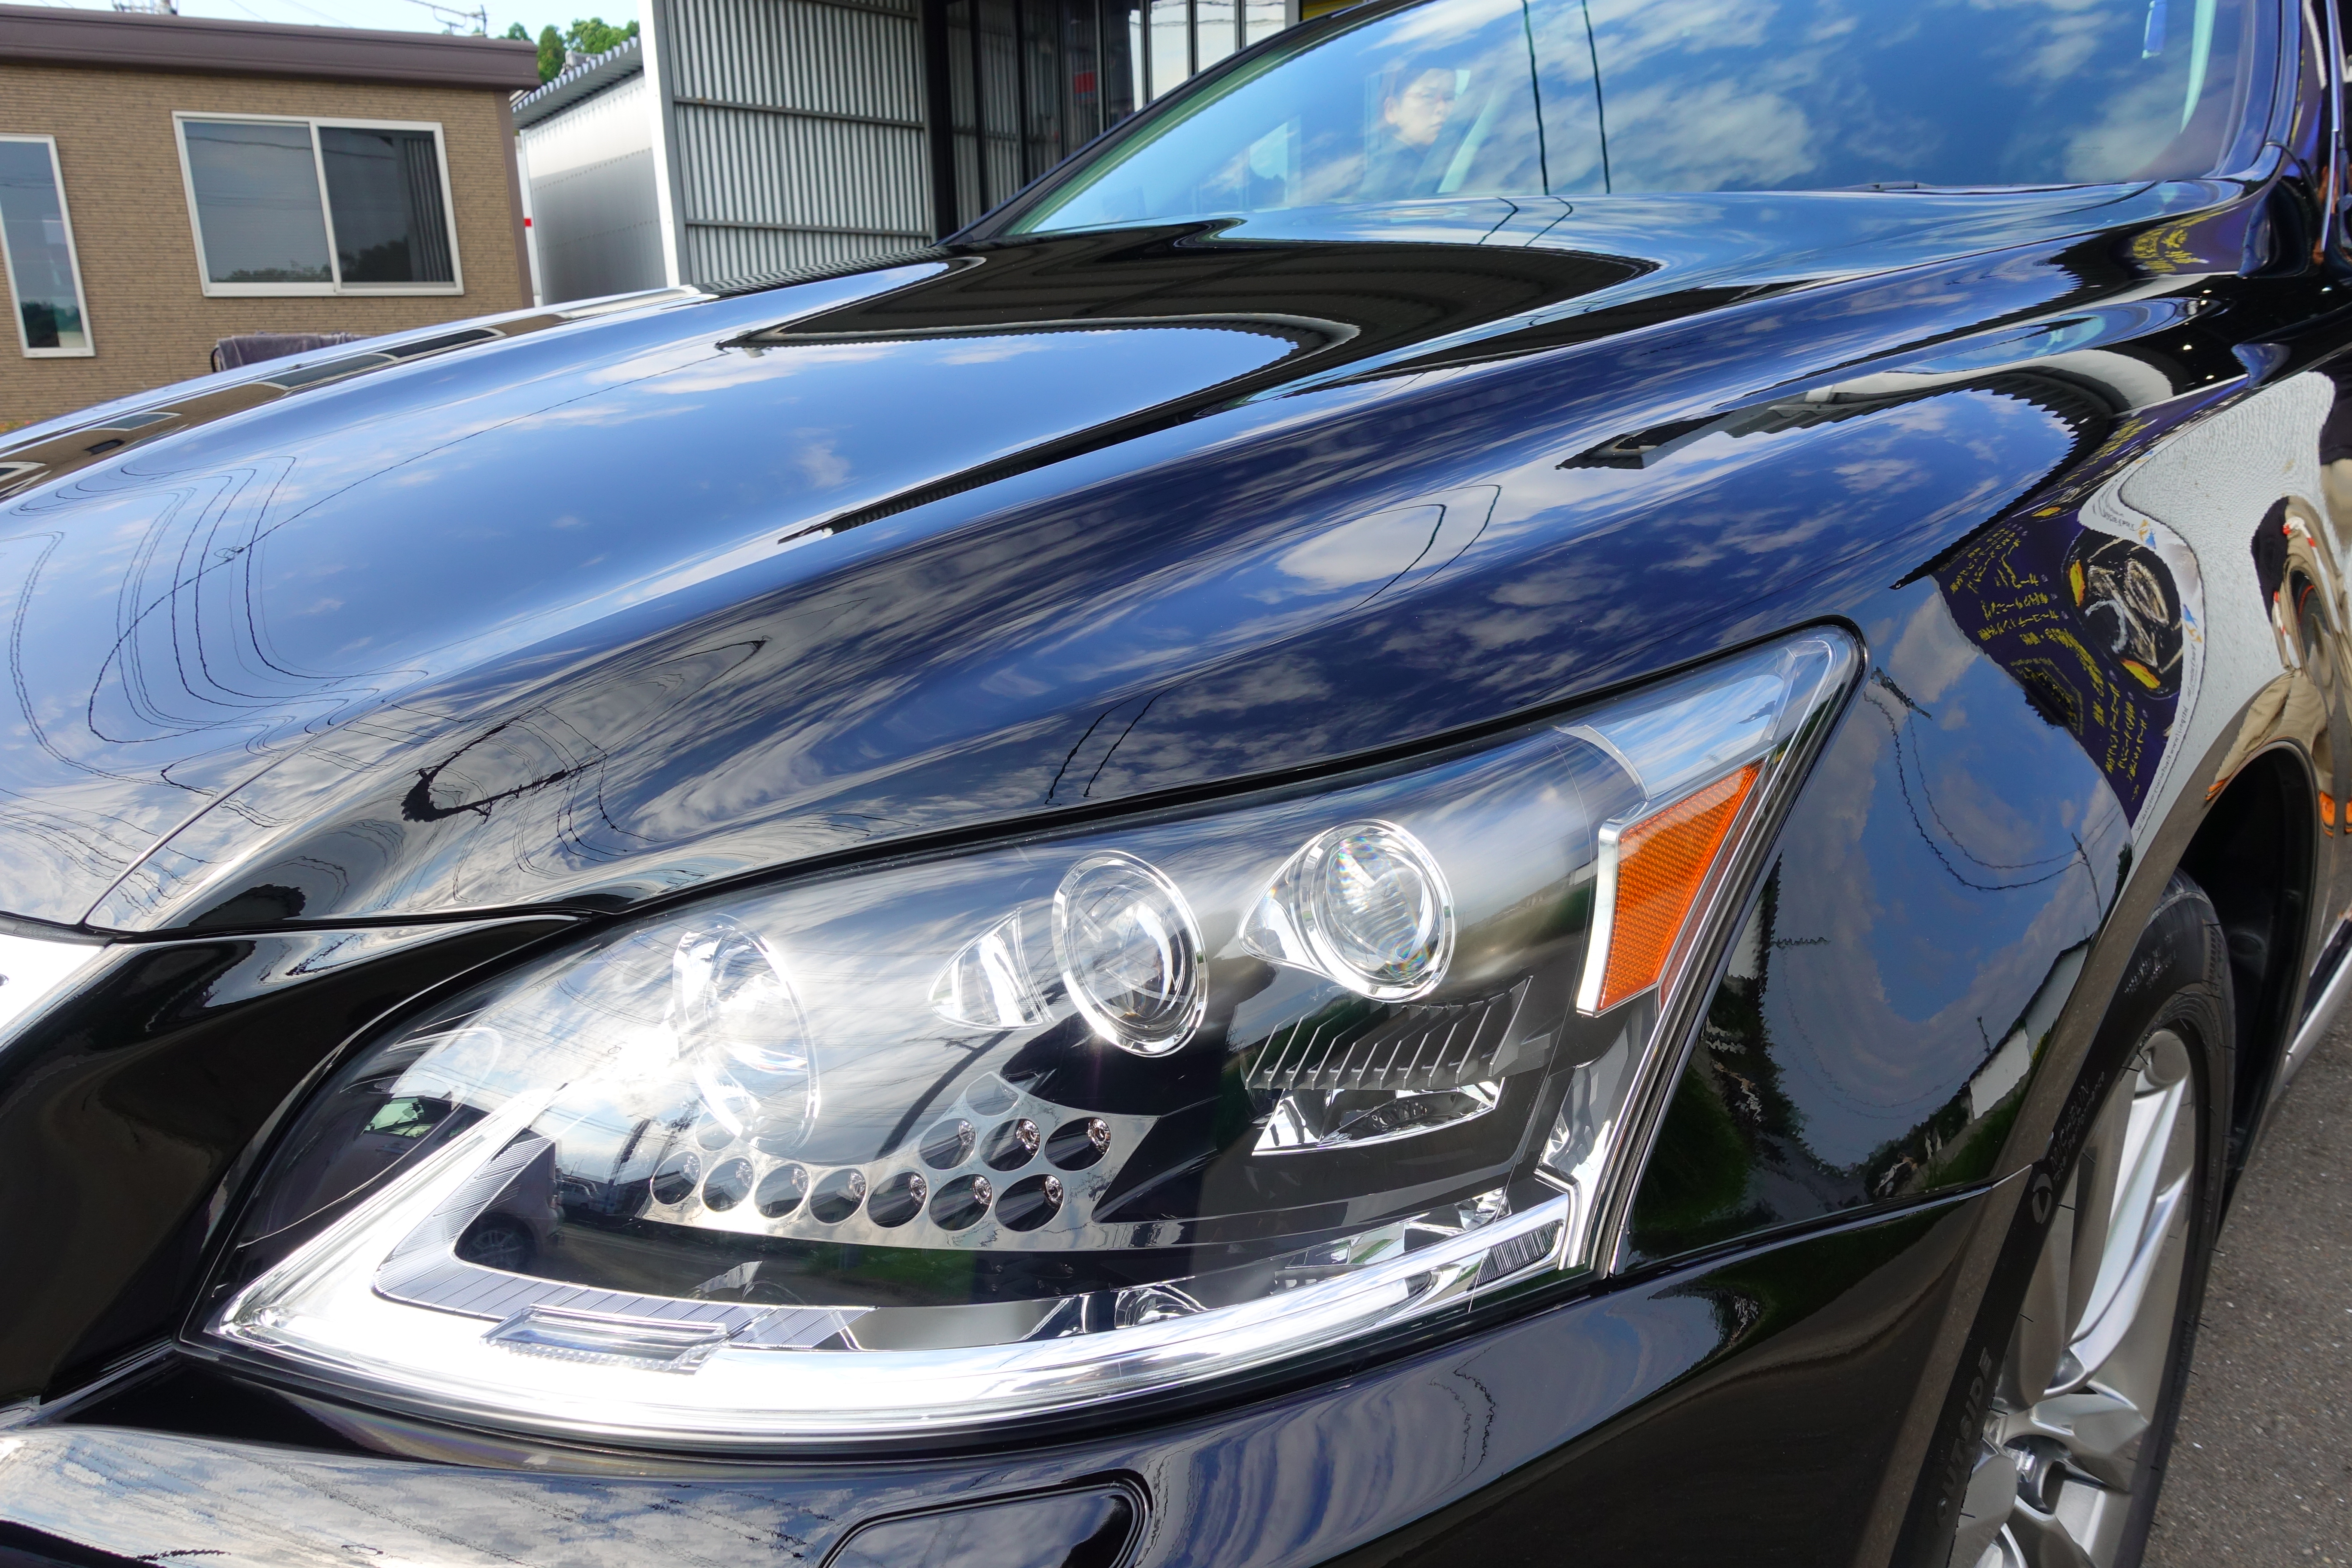 中古車レクサス Ls600h 研磨で見違える輝きに ガラスコーティング施工 宮崎のカーコーティング専門店